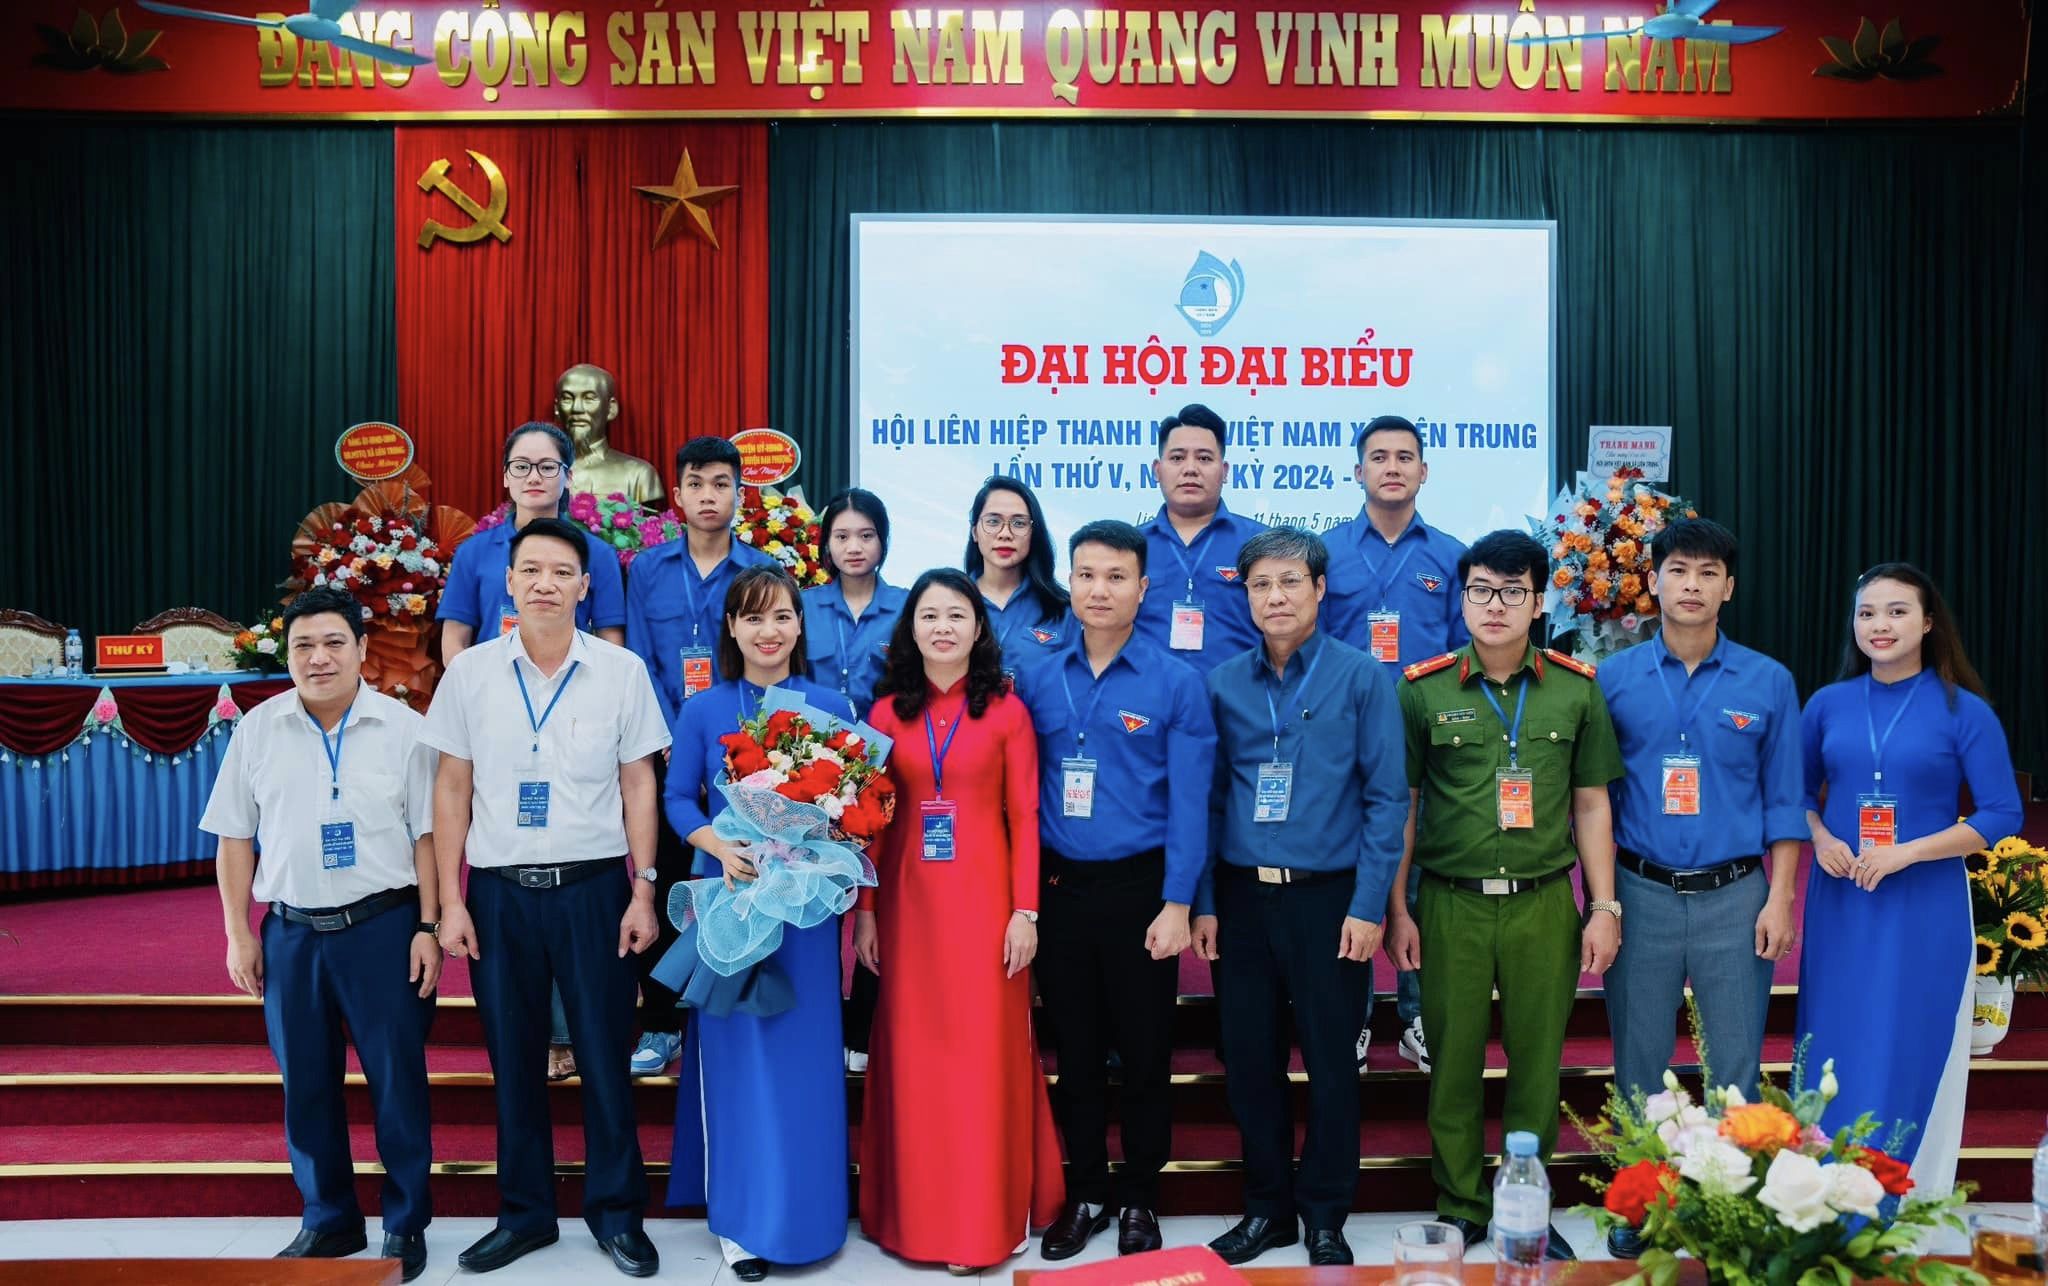 Đại hội Đại Biểu Hội LHTN Việt Nam xã Liên Trung lần thứ V, Nhiệm kỳ 2024-2029